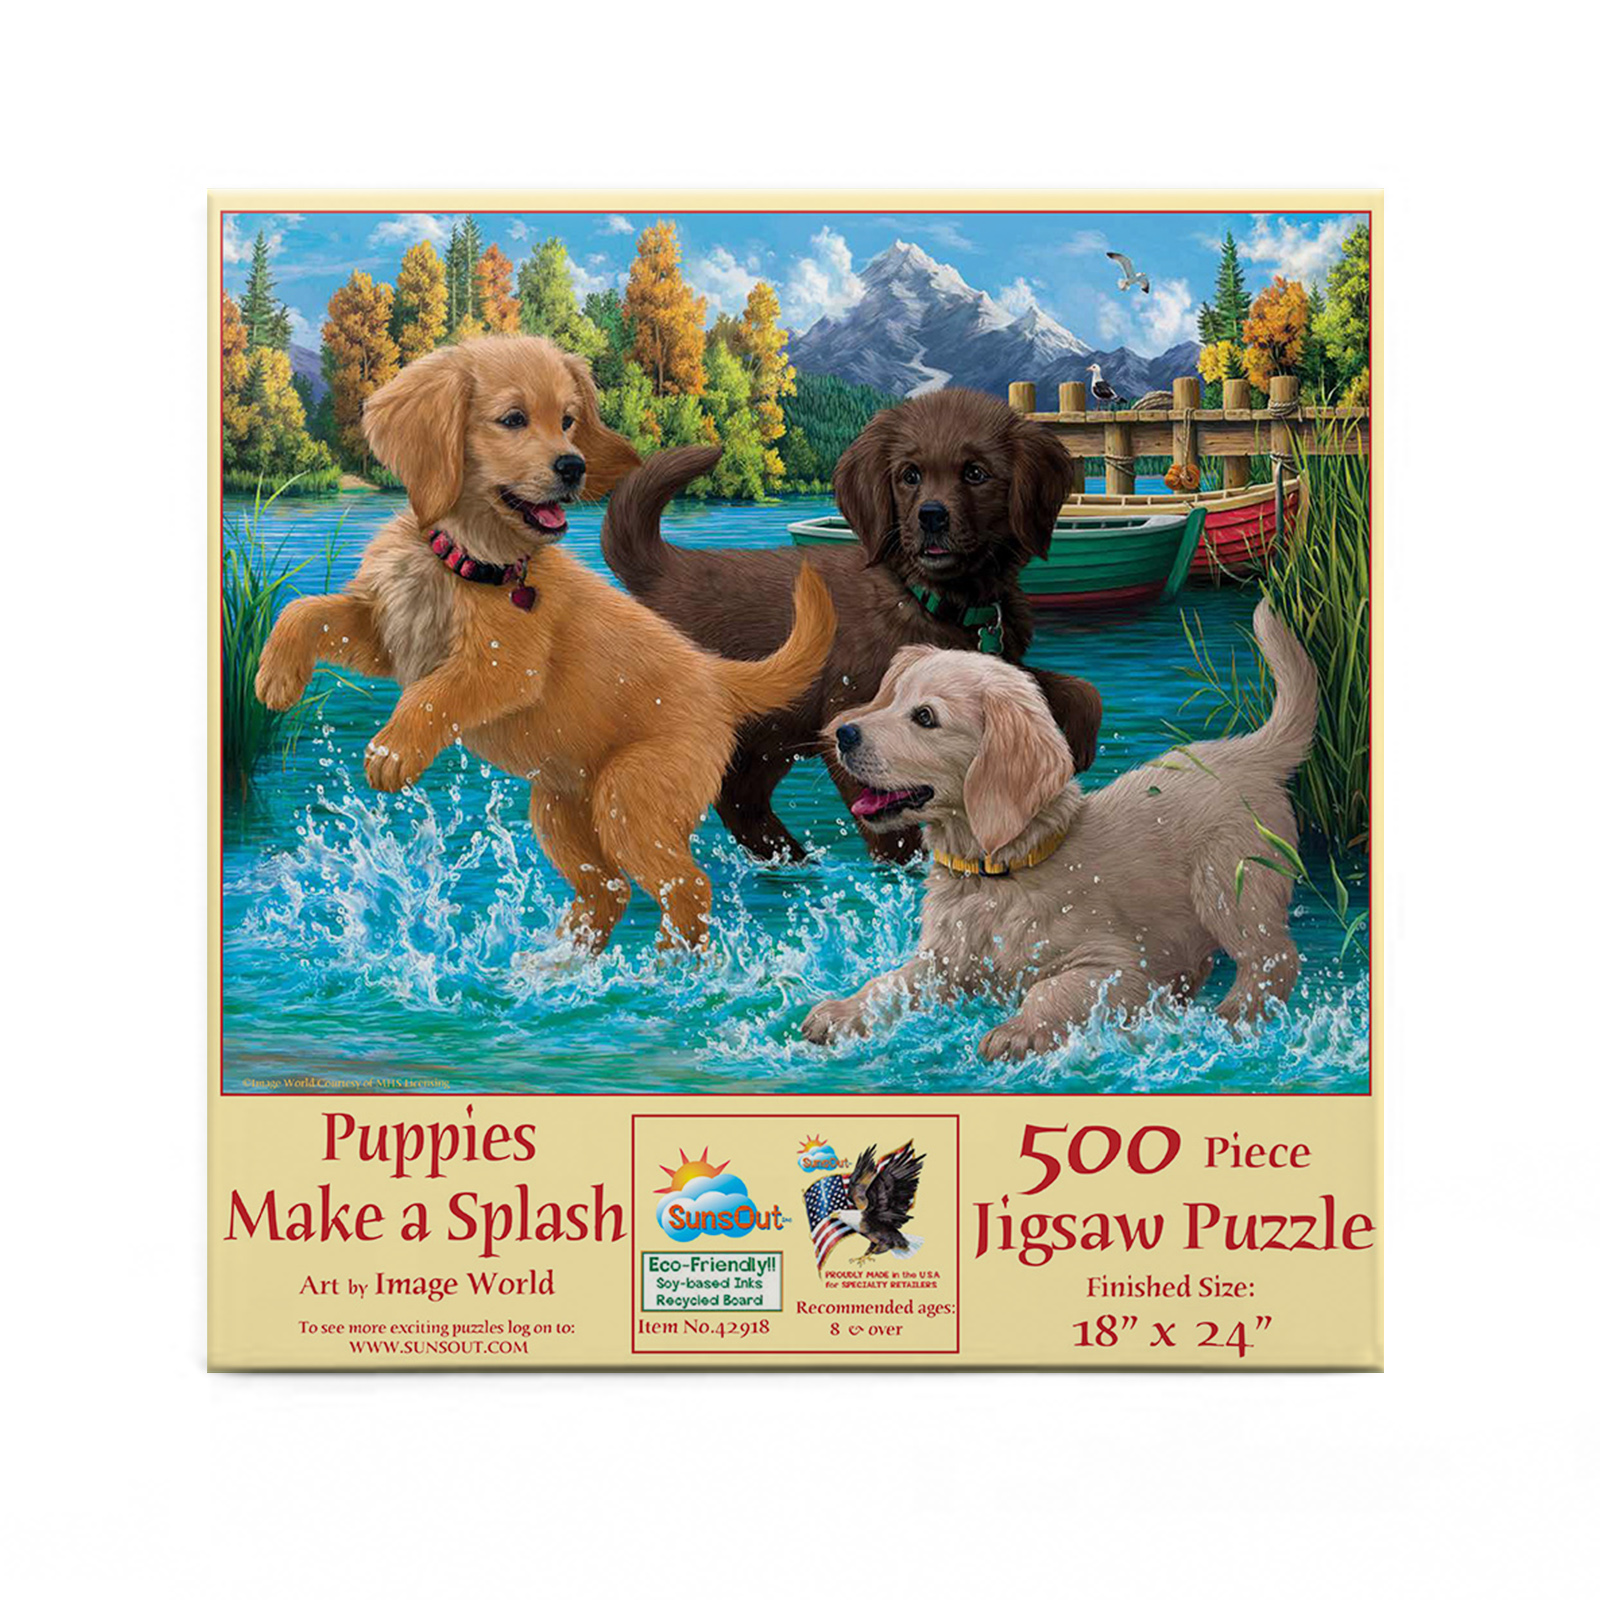 Puppies Make a Splash